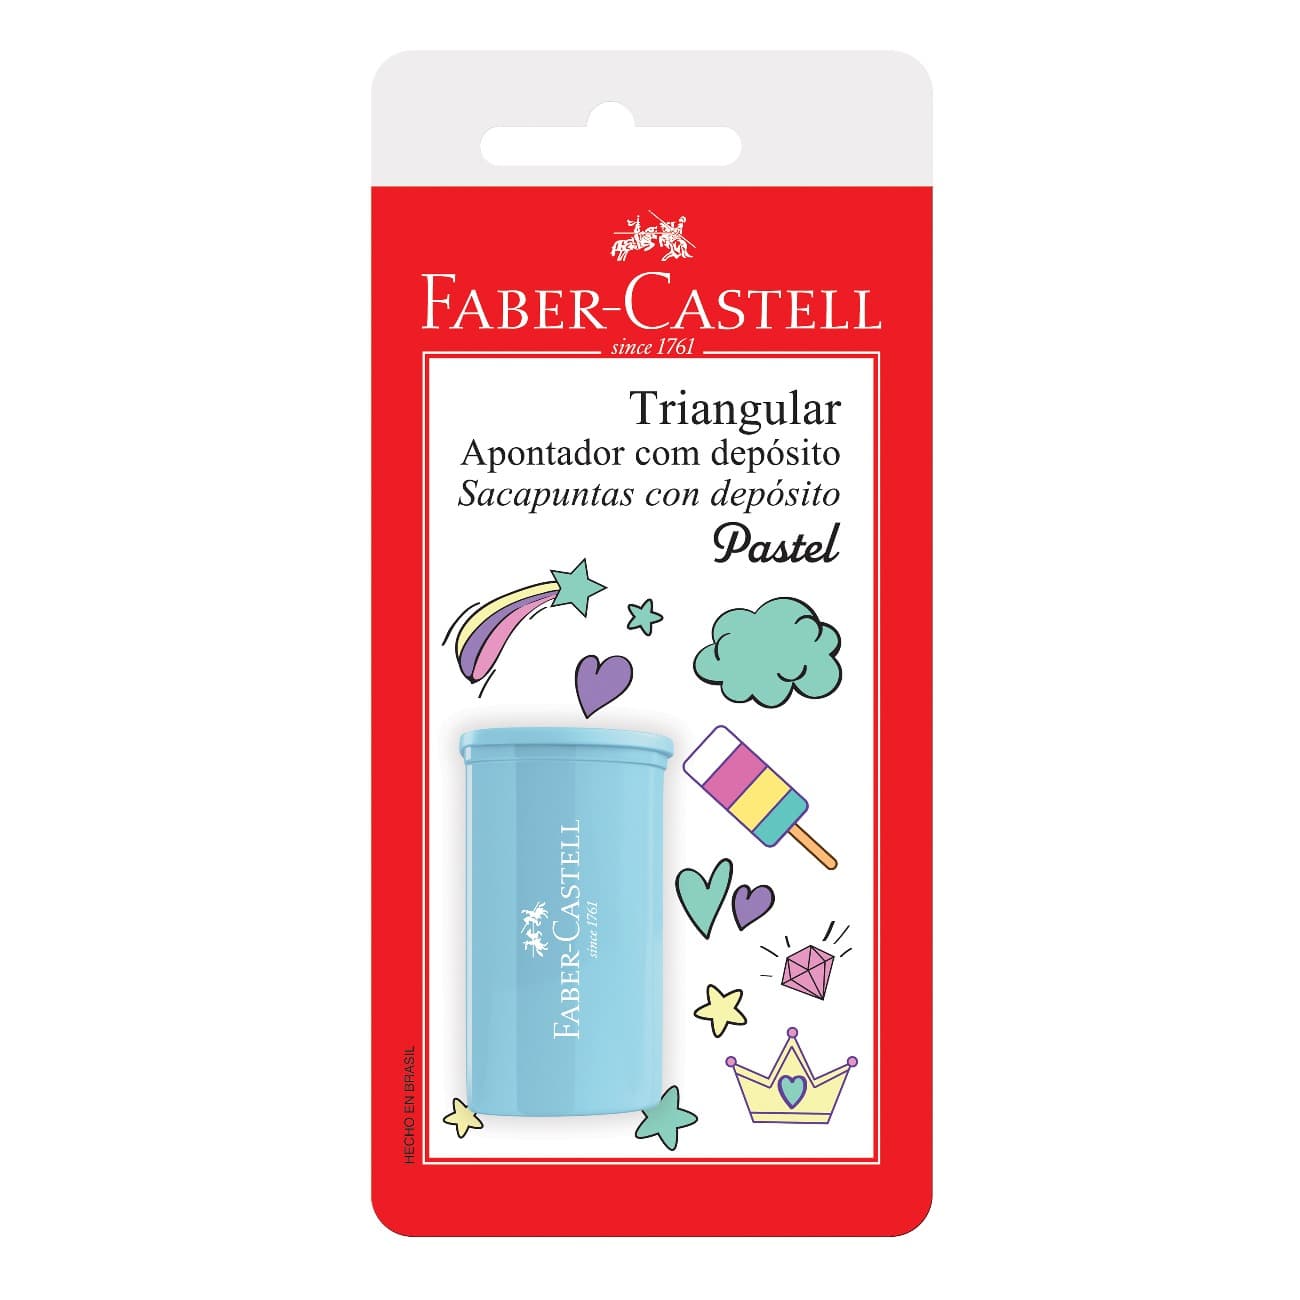 Apontador Faber-Castell Com Depsito Triangular Cartela